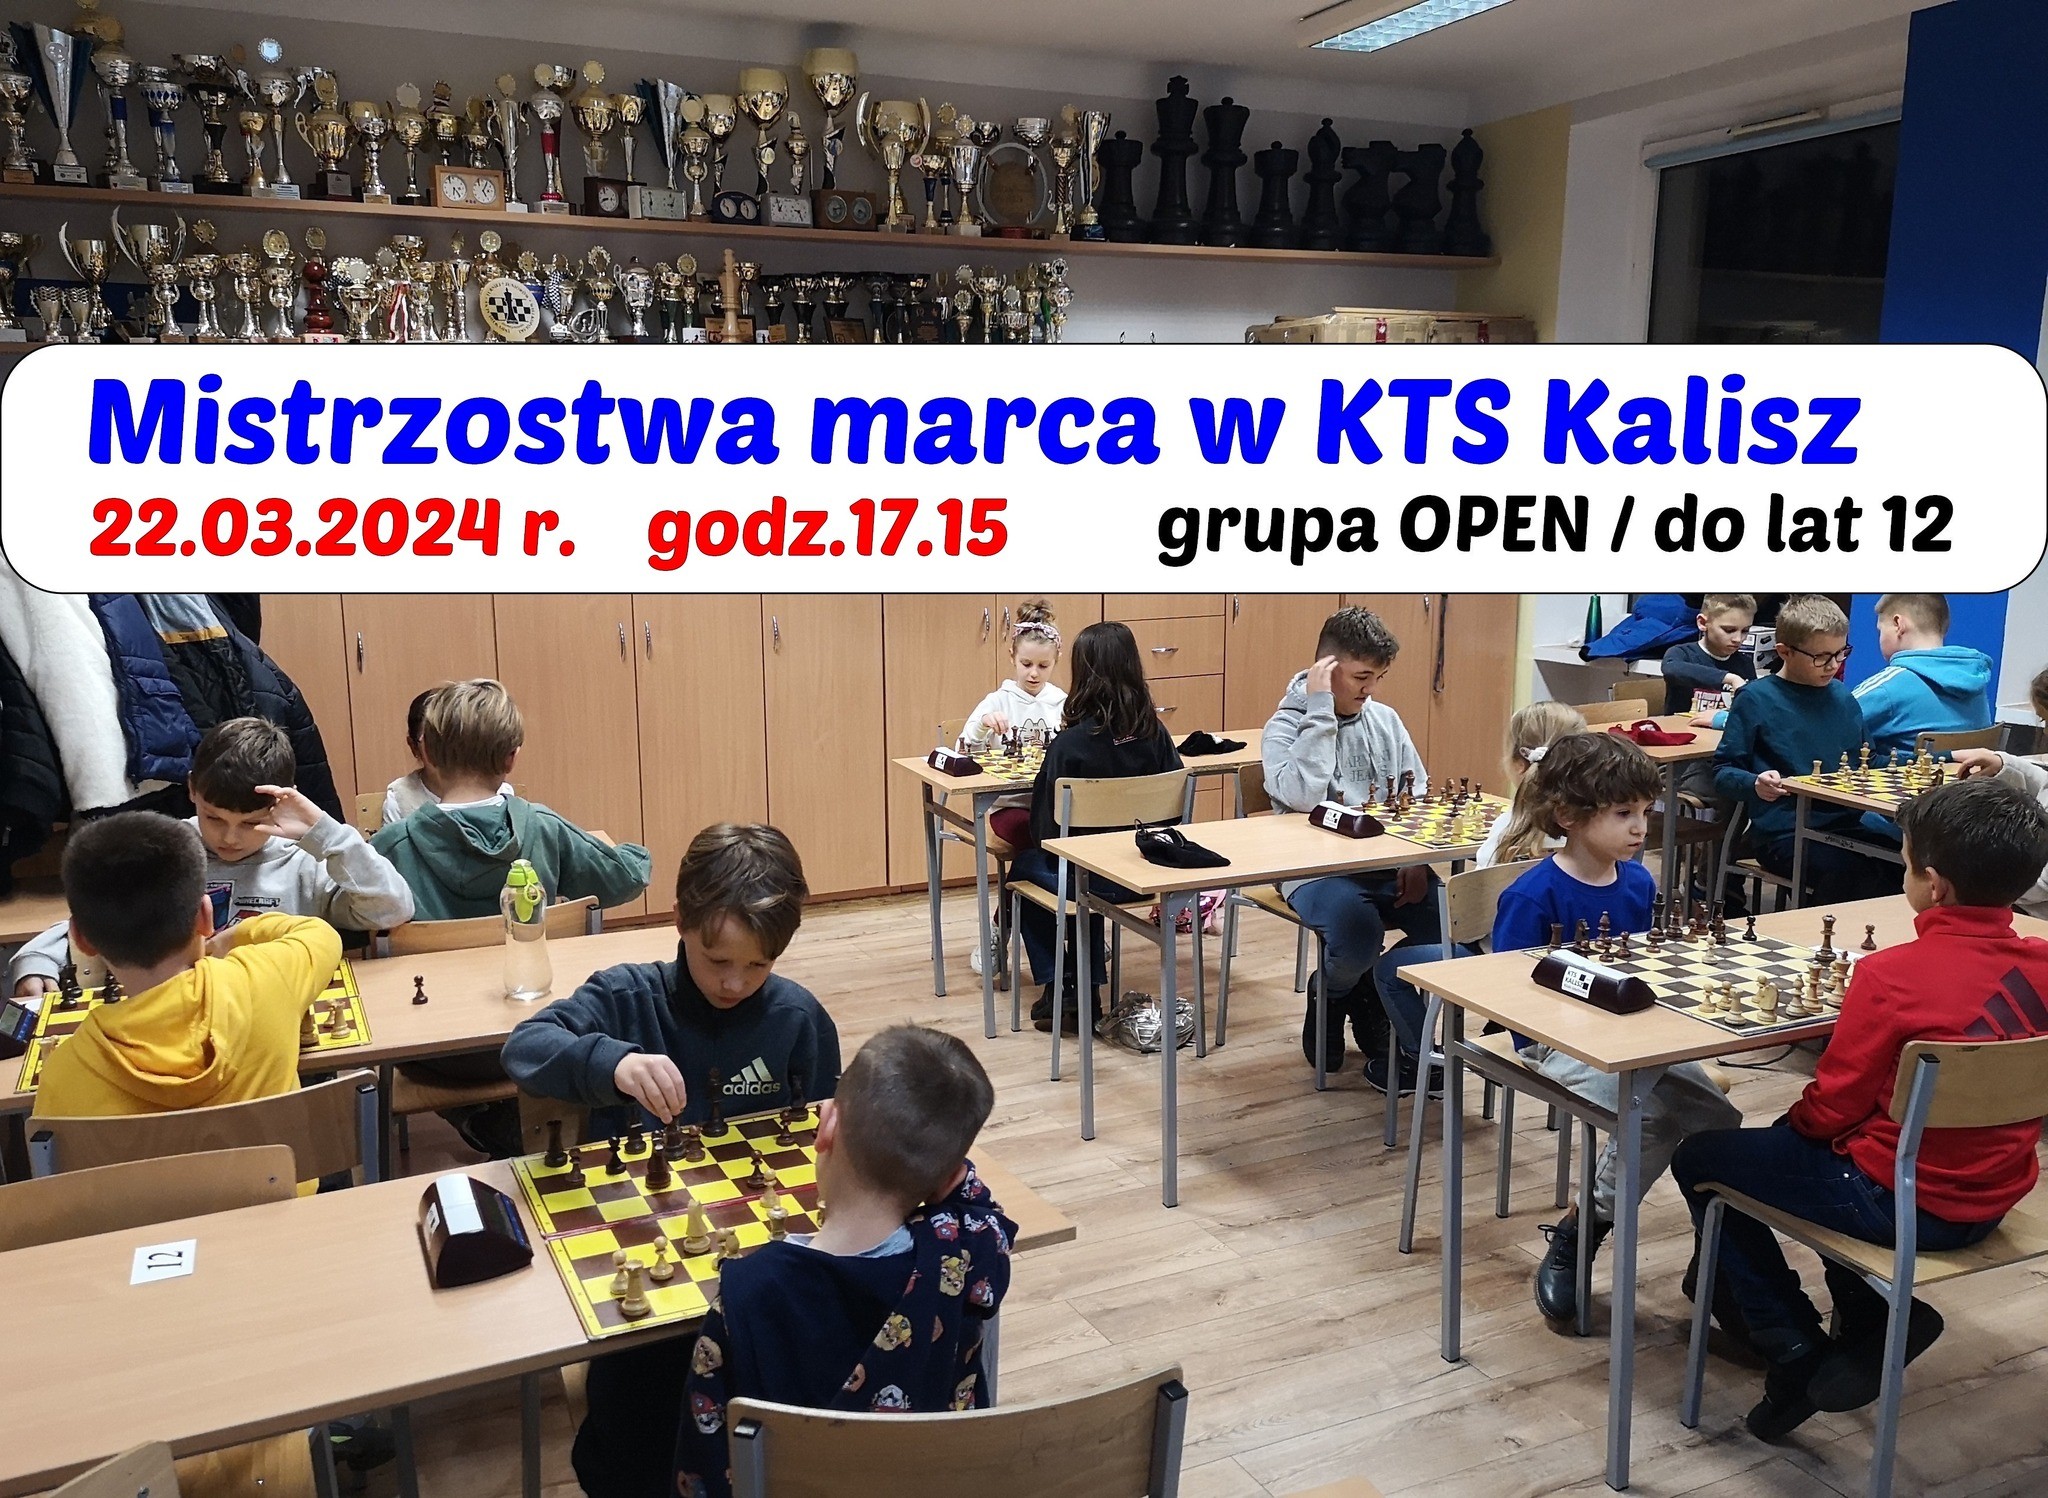 Mistrzostwa marca w KTS Kalisz już w piątek